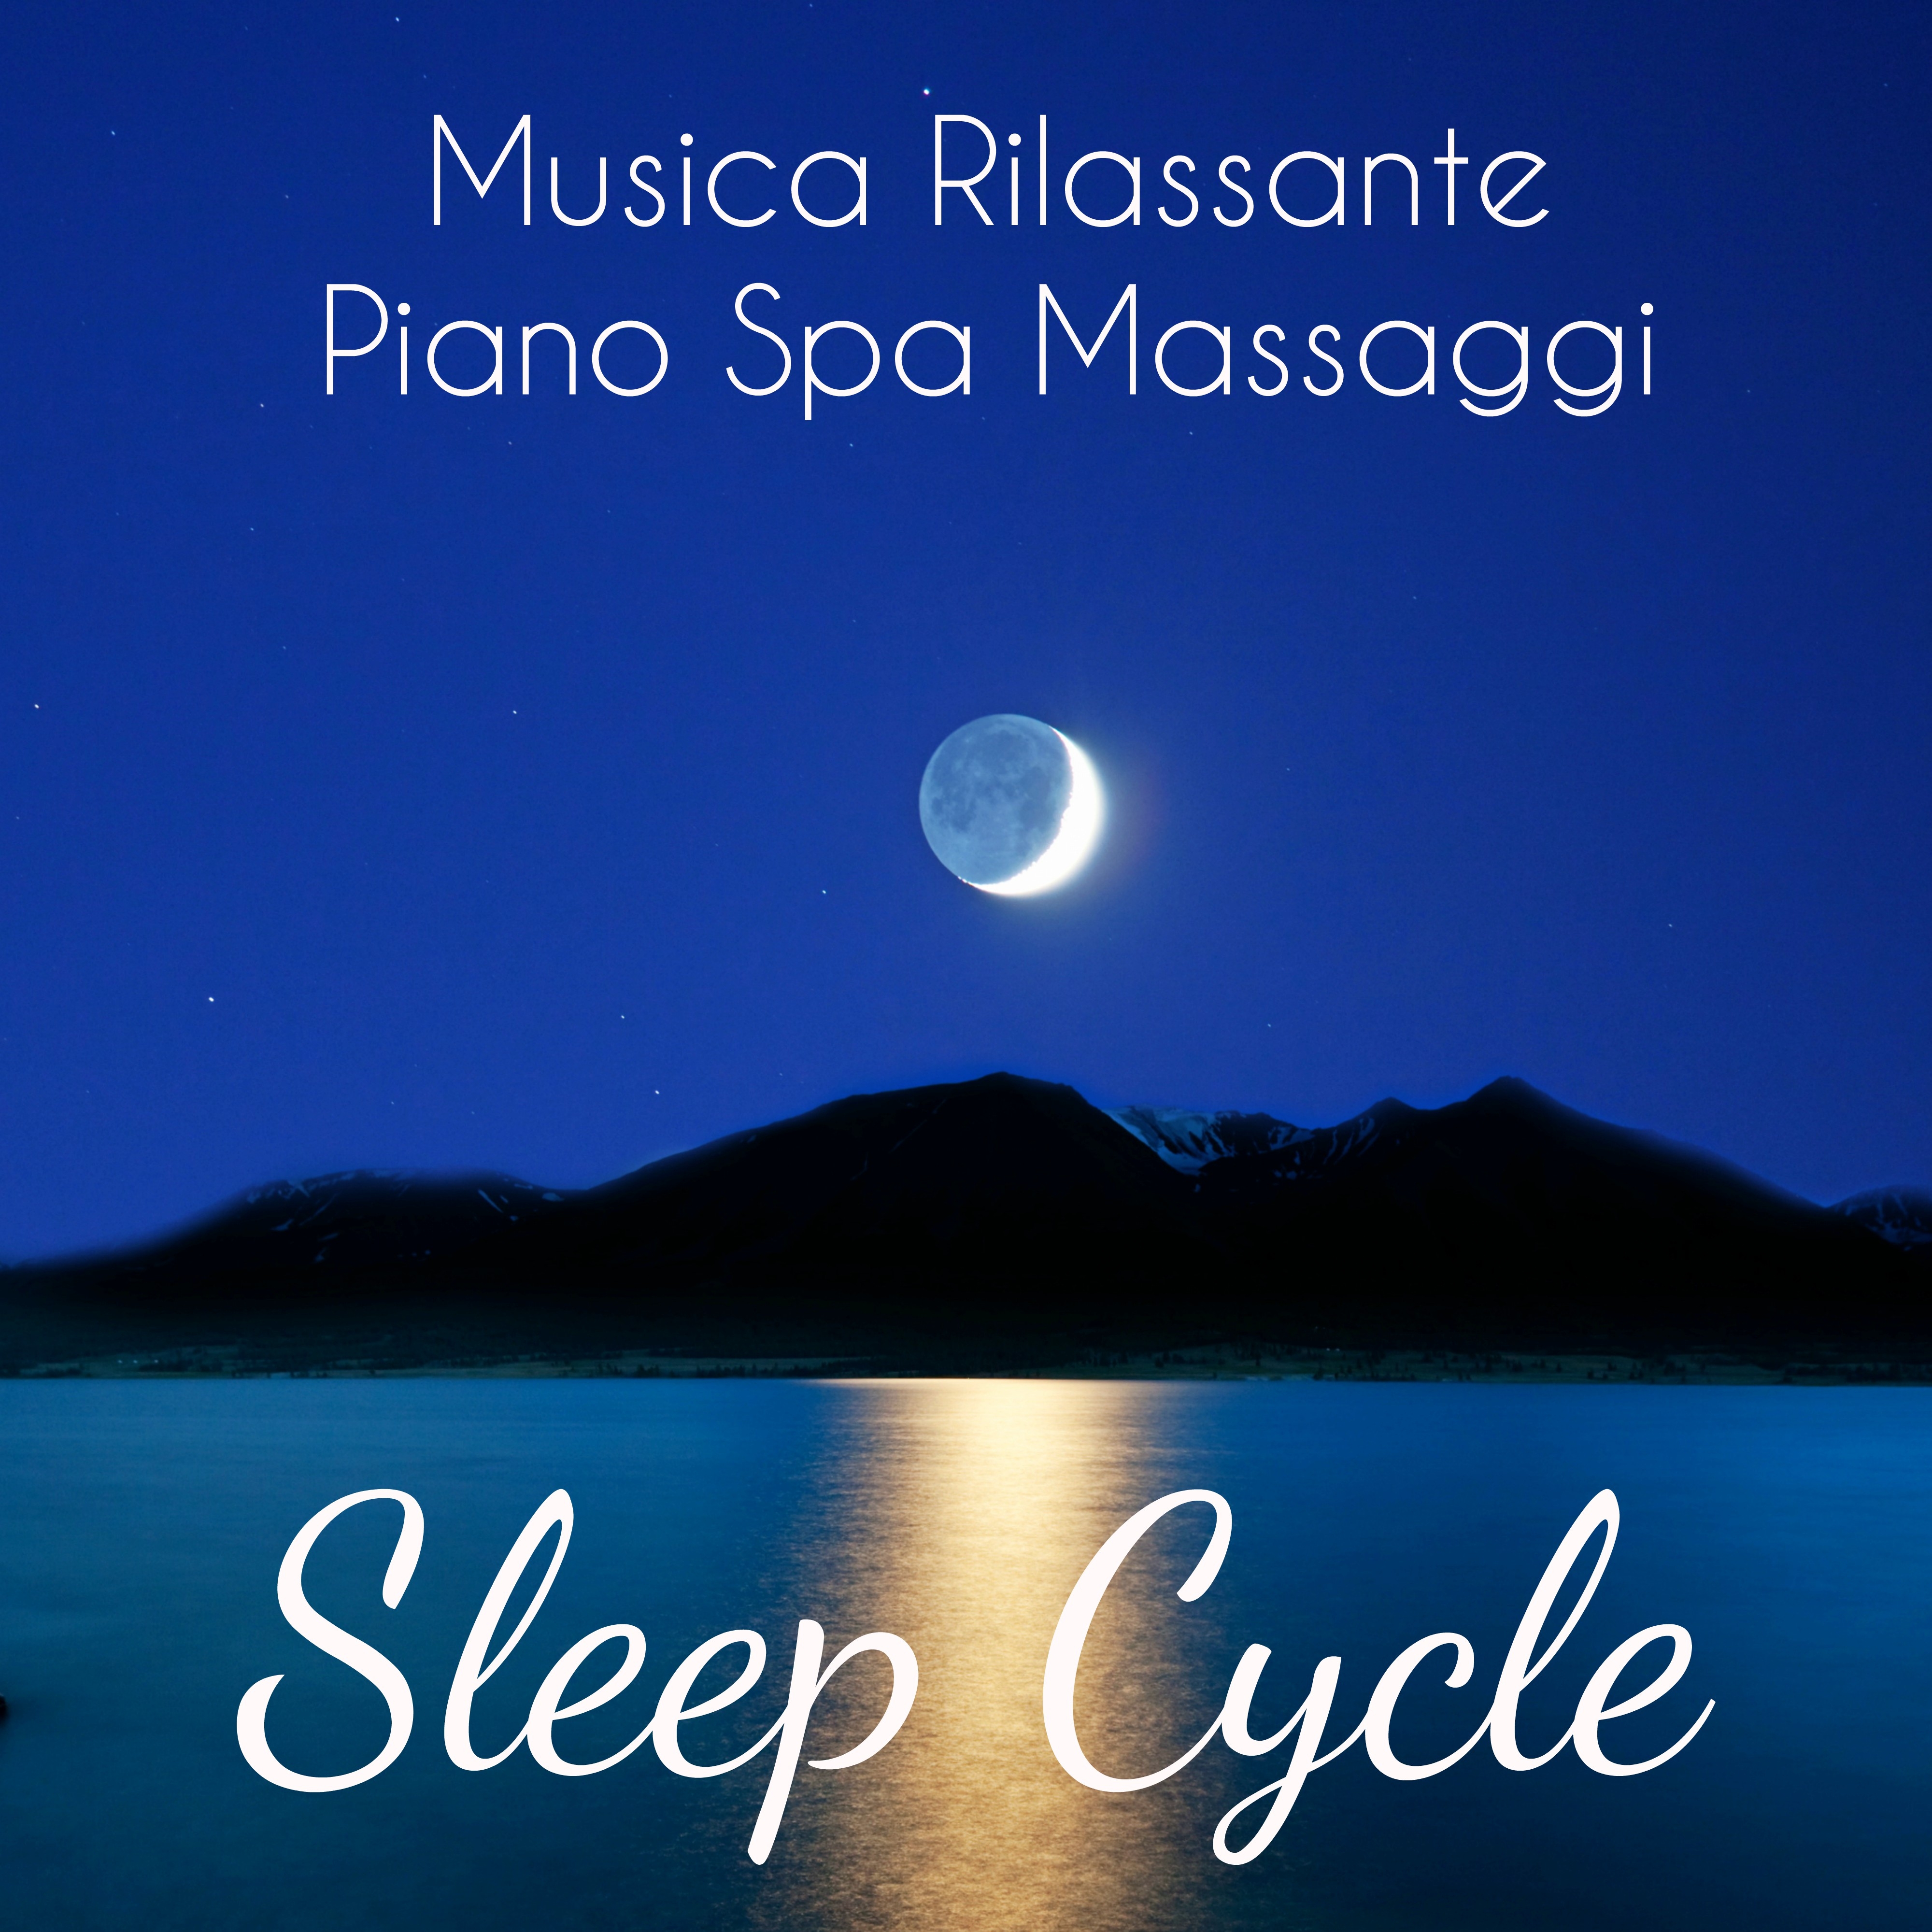 Sleep Cycle - Musica Rilassante Piano Spa Massaggi per Profondo Rilassamento Meditazione Guidata e Dormire Bene